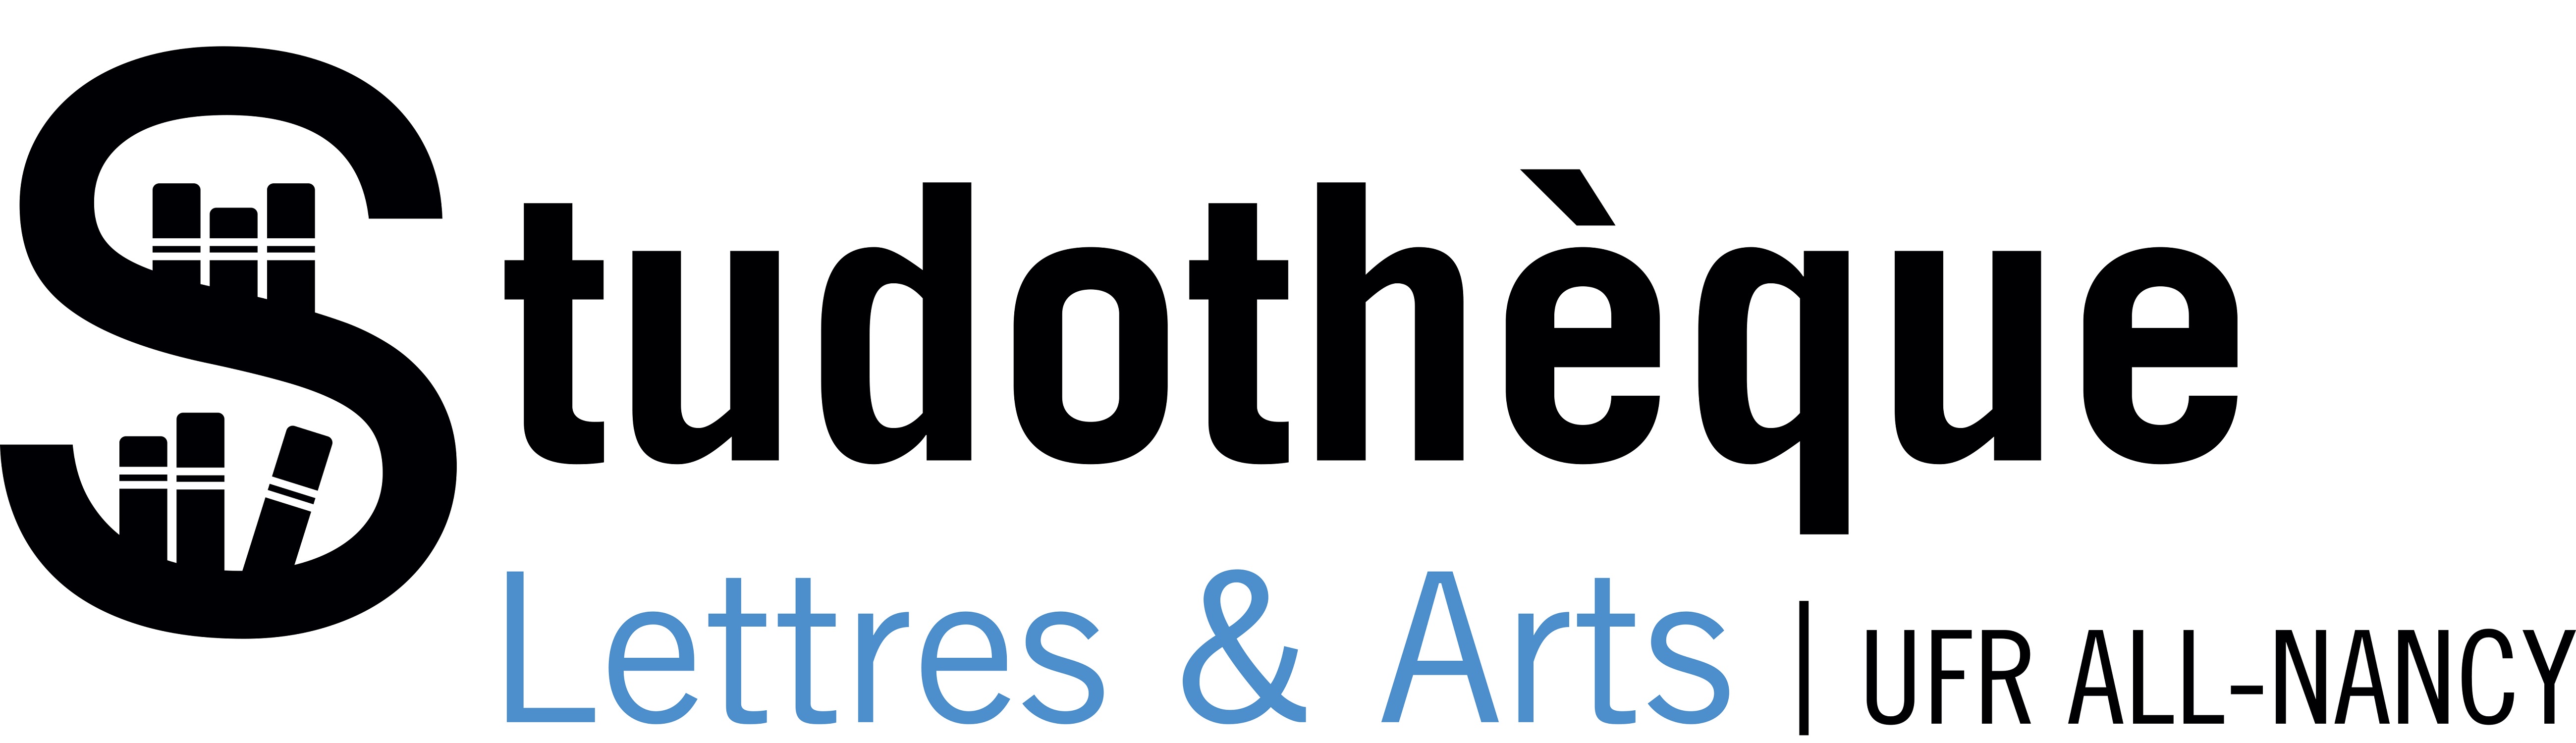 Logo Studothèque Lettres & Arts